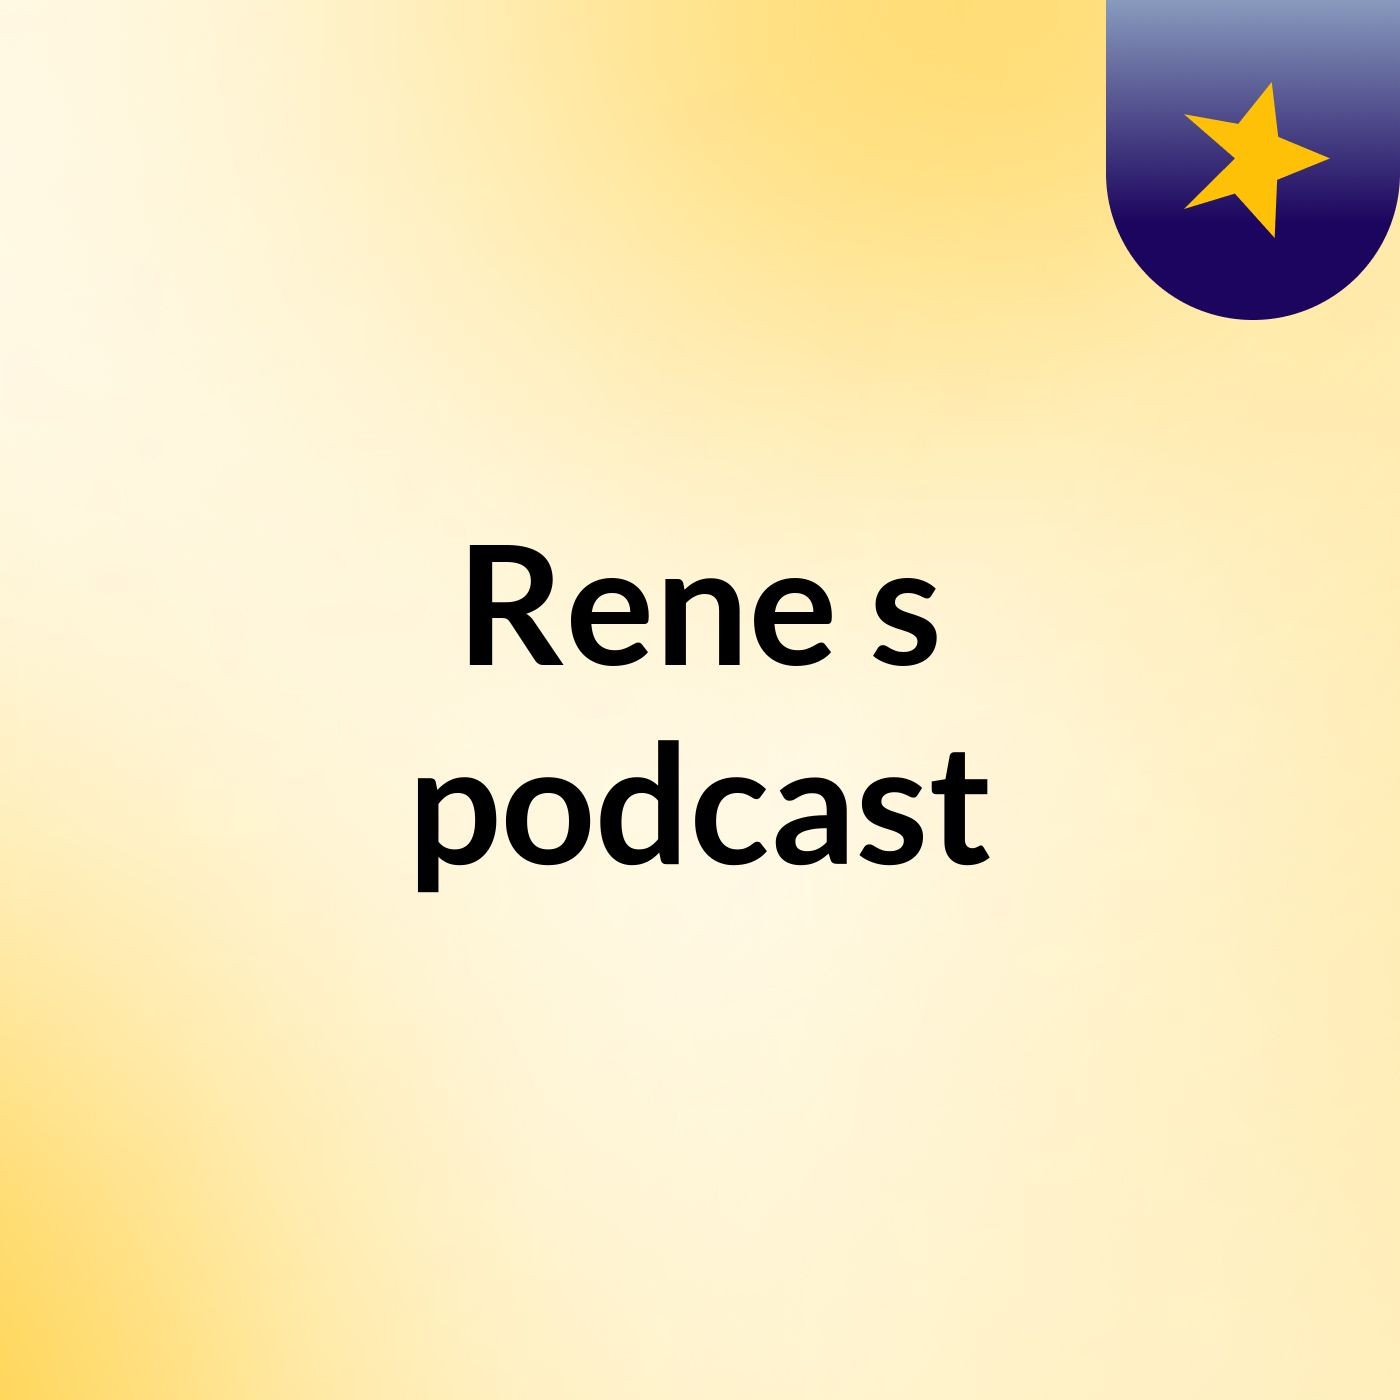 Rene's podcast